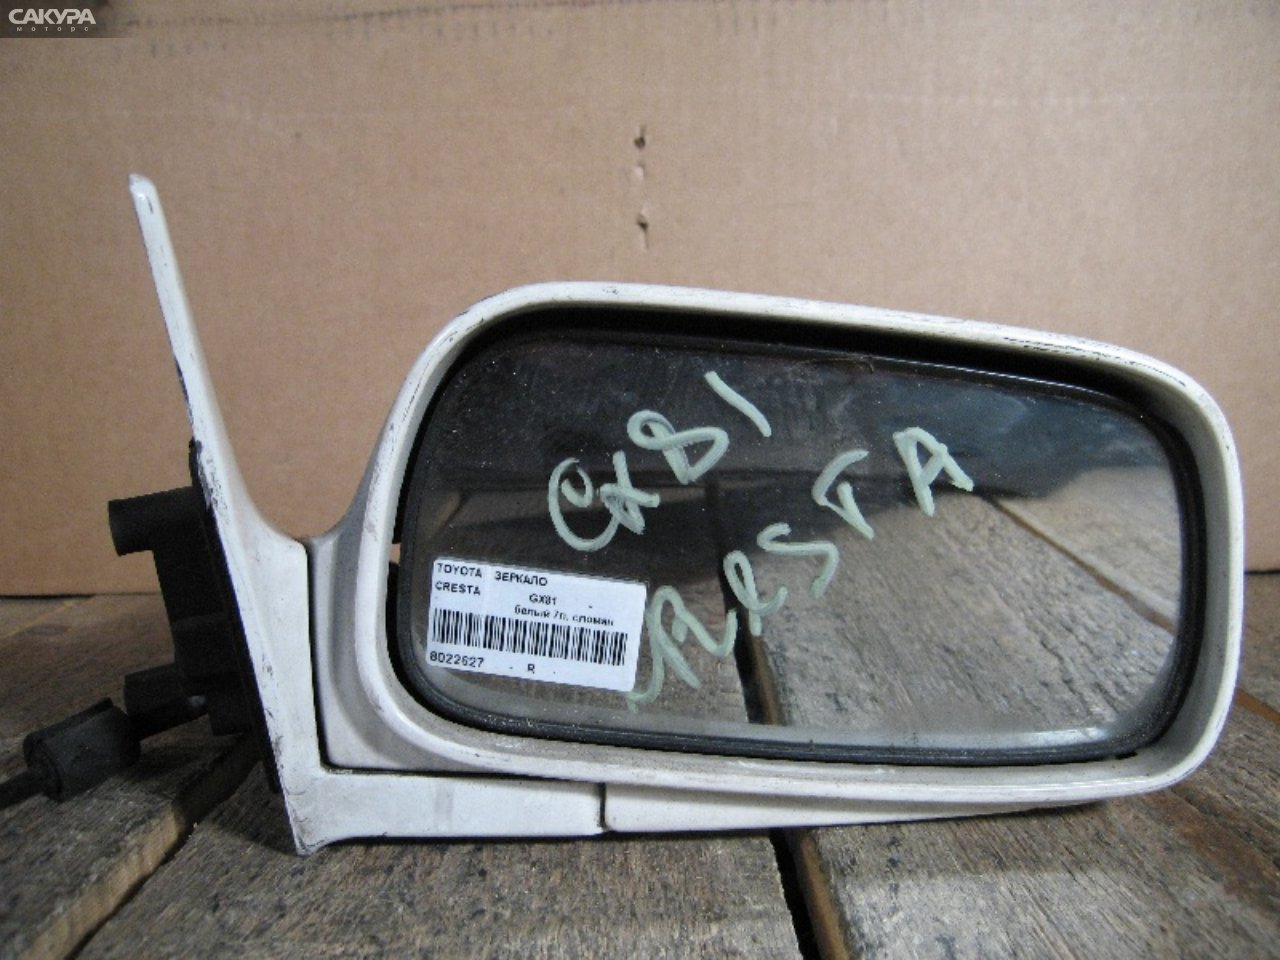 Зеркало боковое правое Toyota Cresta GX81: купить в Сакура Абакан.